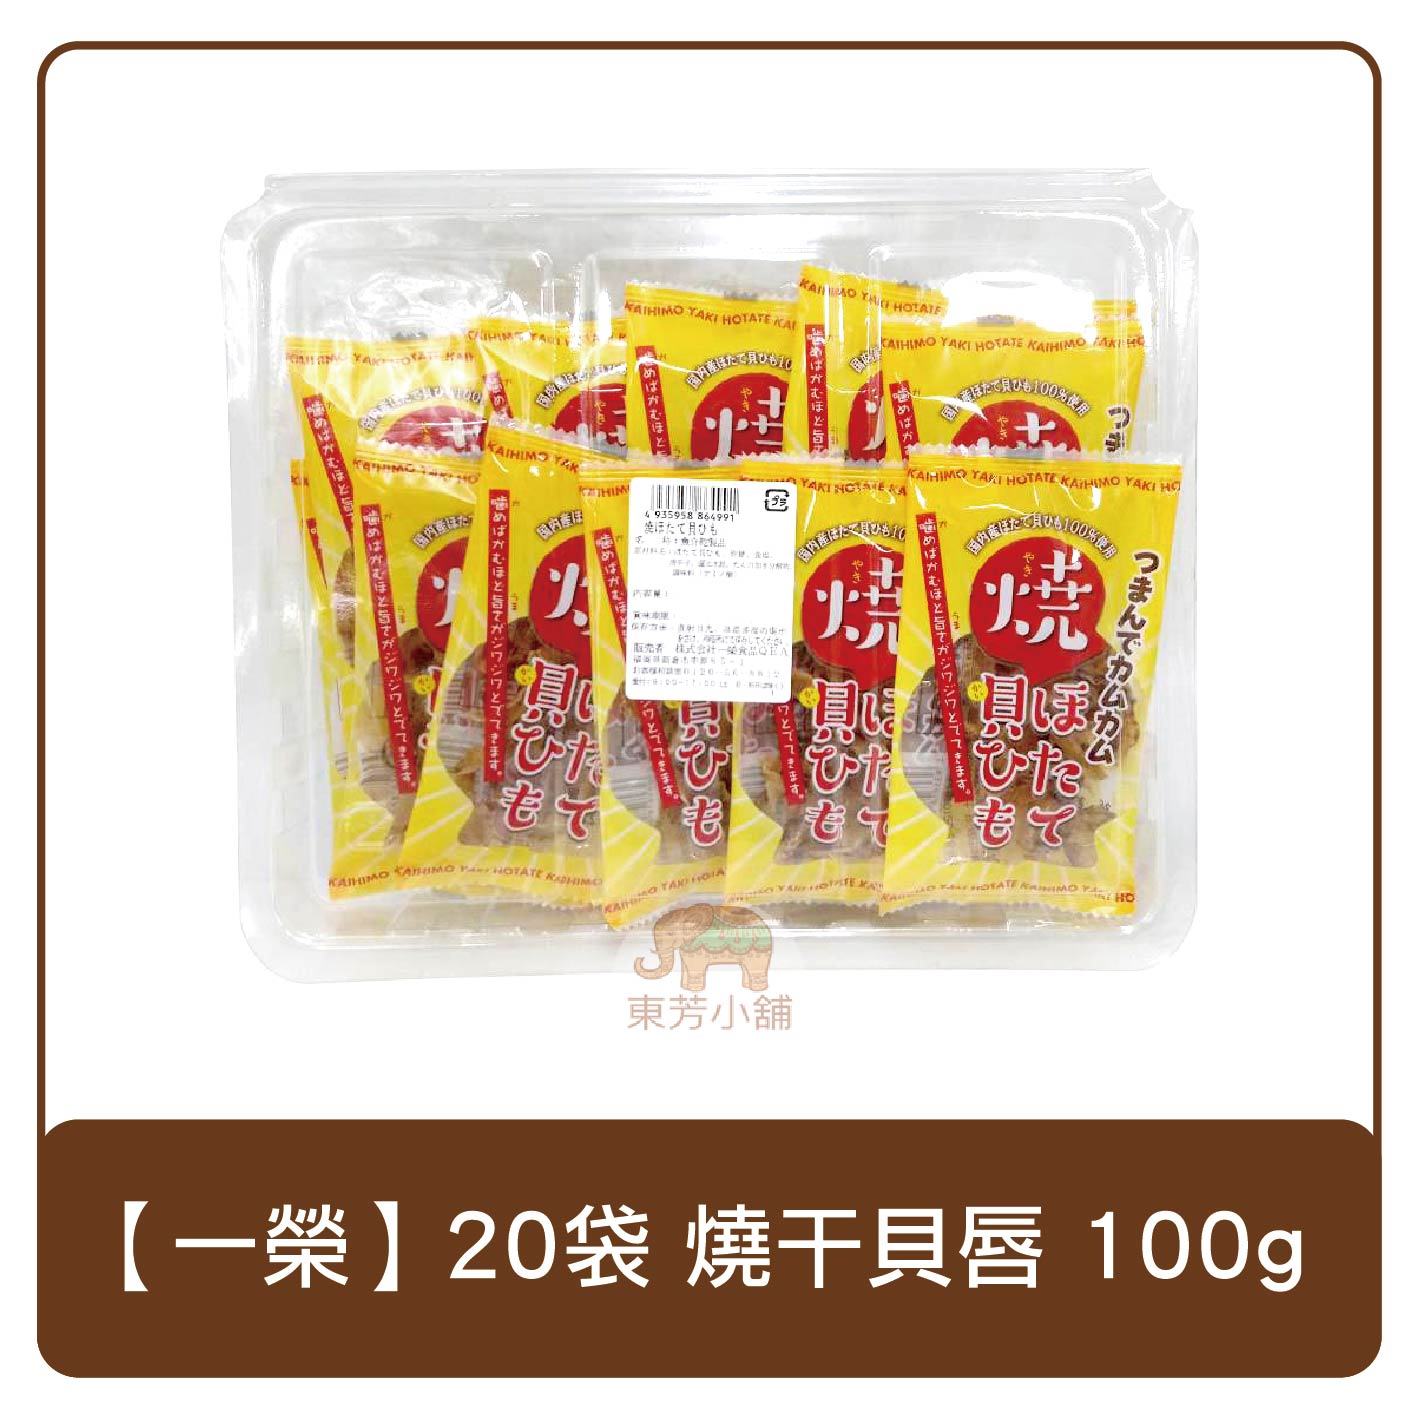 日本 一榮便當盒 20入 燒干貝唇 100g 零食